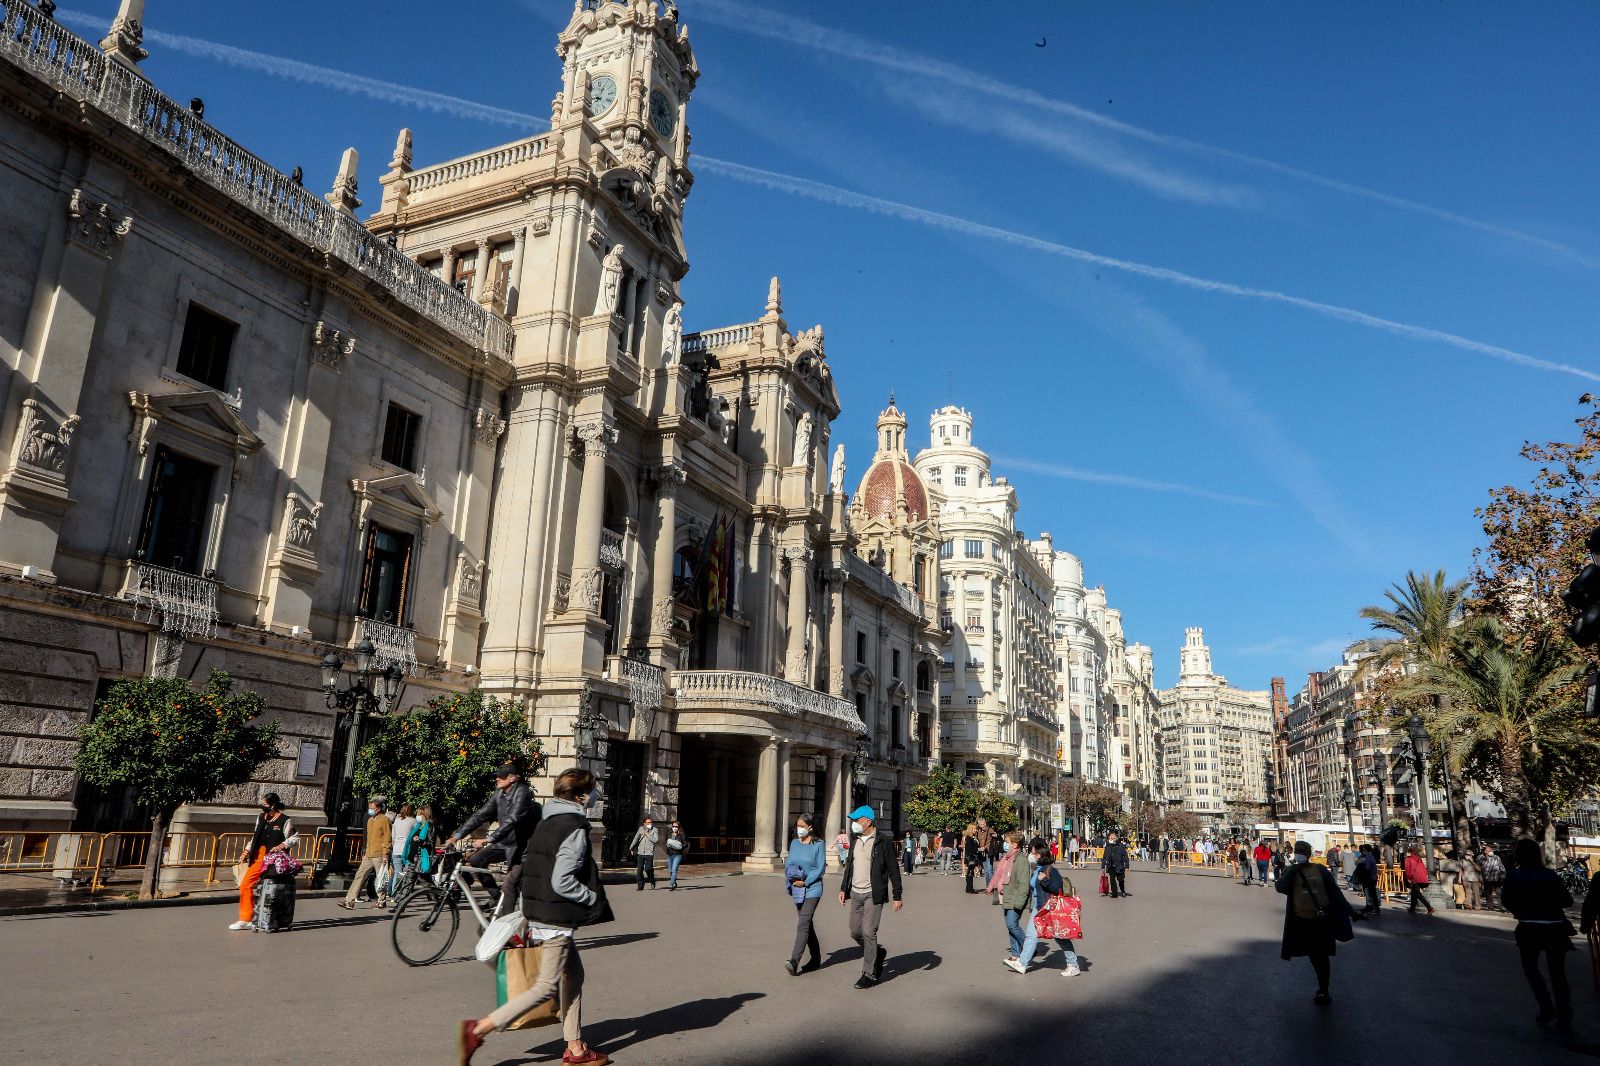 El buen tiempo llena las calles de València un 31 de diciembre